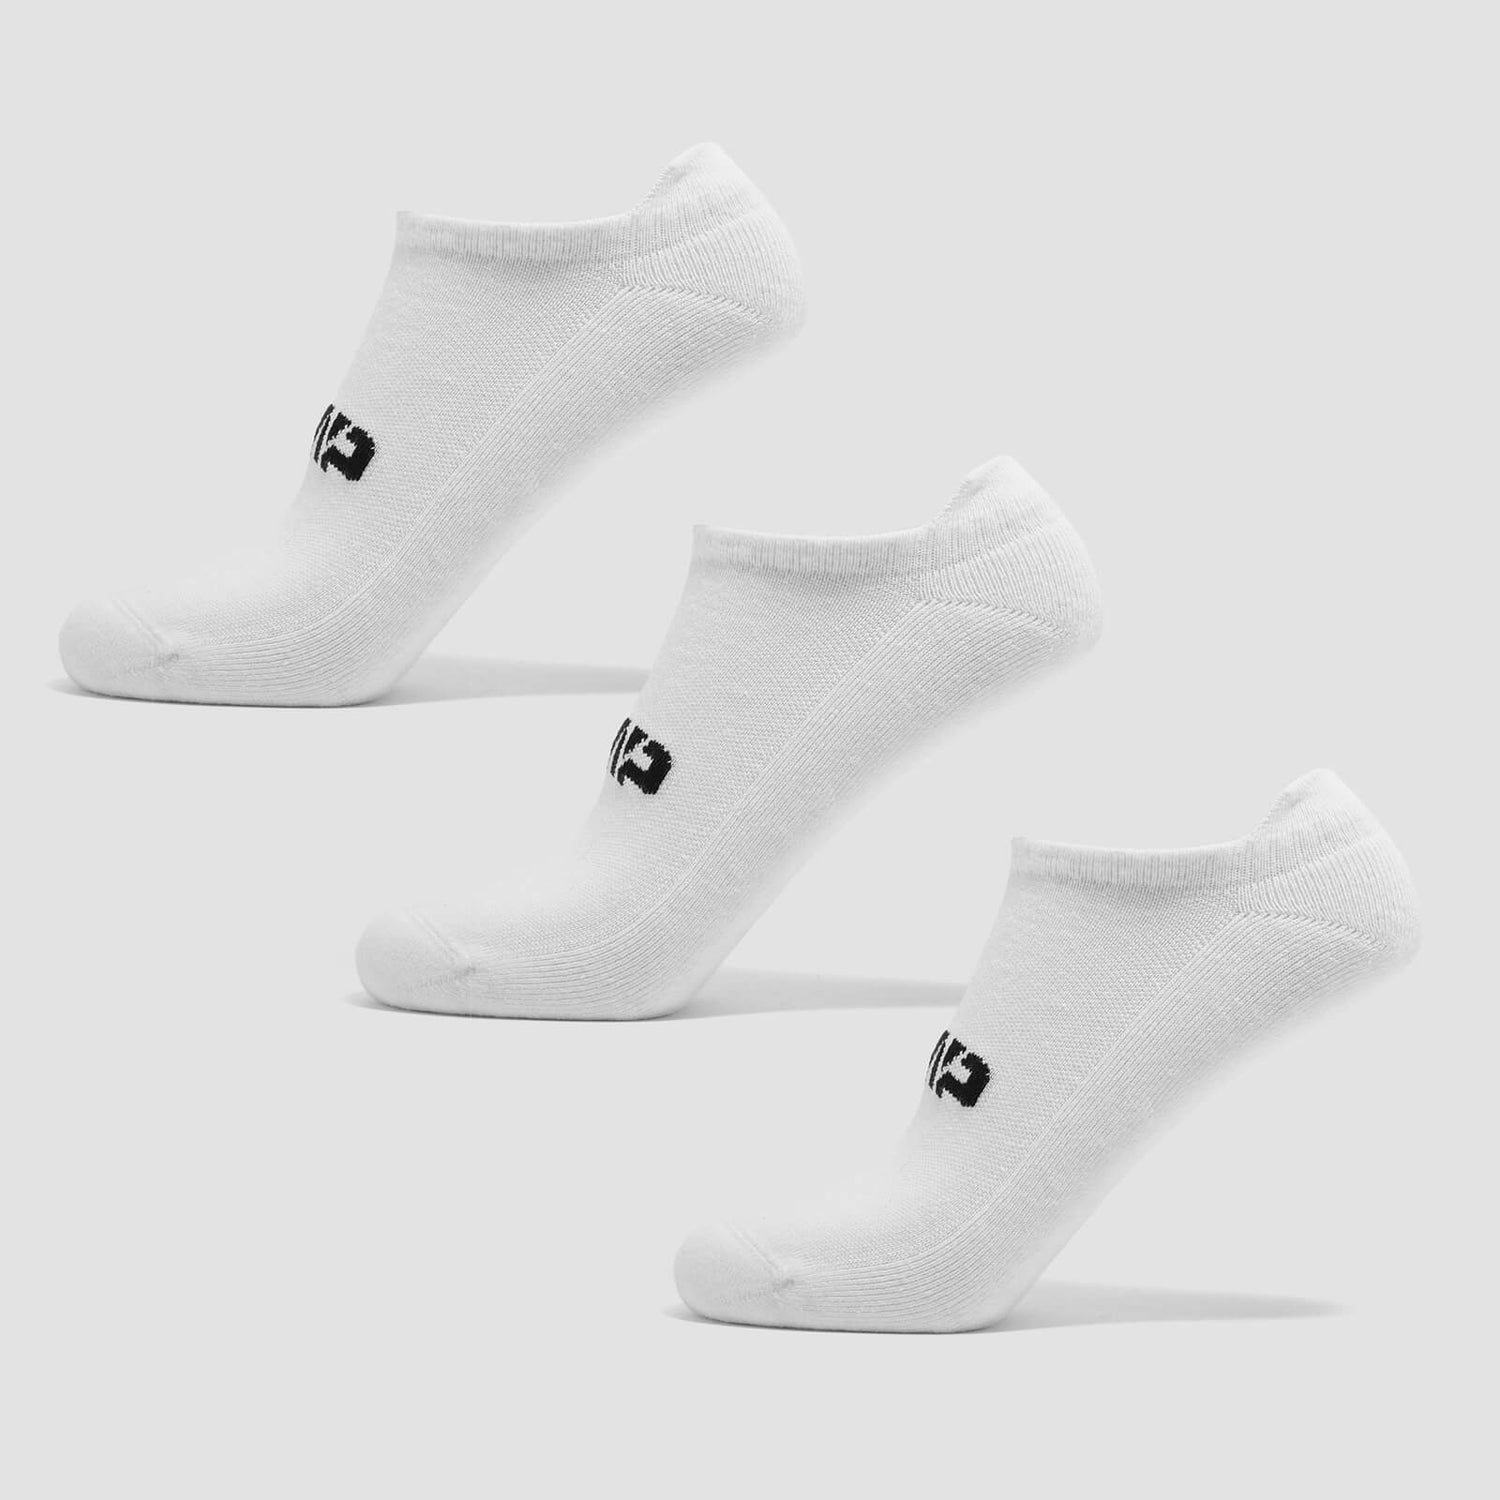 Chaussettes d’entraînement unisexes MP (lot de 3 paires) – Blanc - UK 2-5